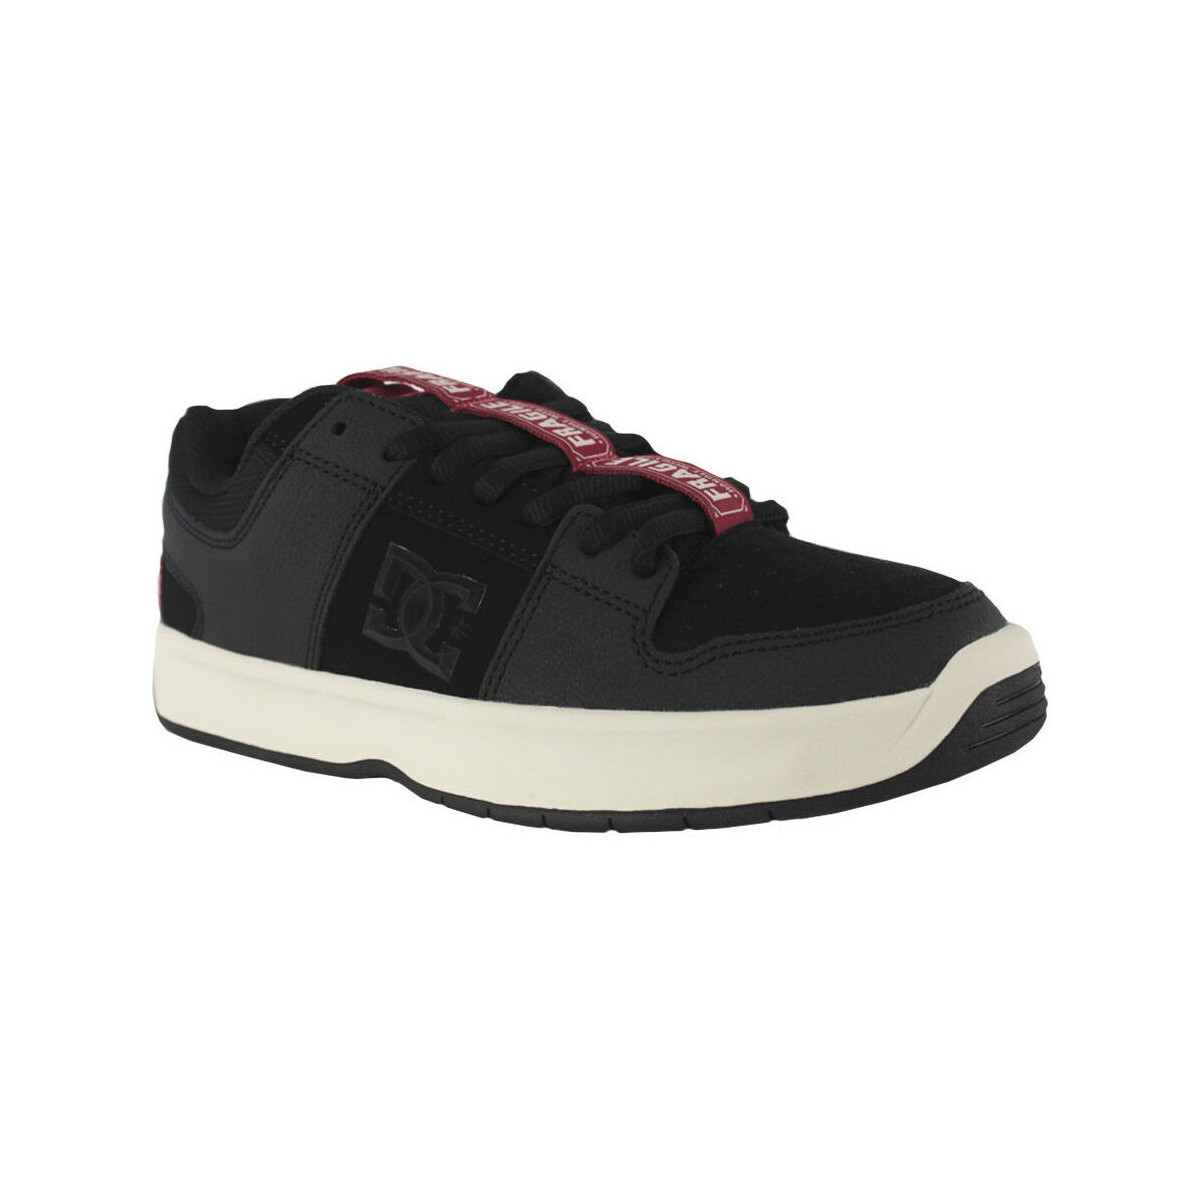 Buty Męskie Trampki DC Shoes Aw lynx zero s ADYS100718 BLACK/BLACK/WHITE (XKKW) Czarny